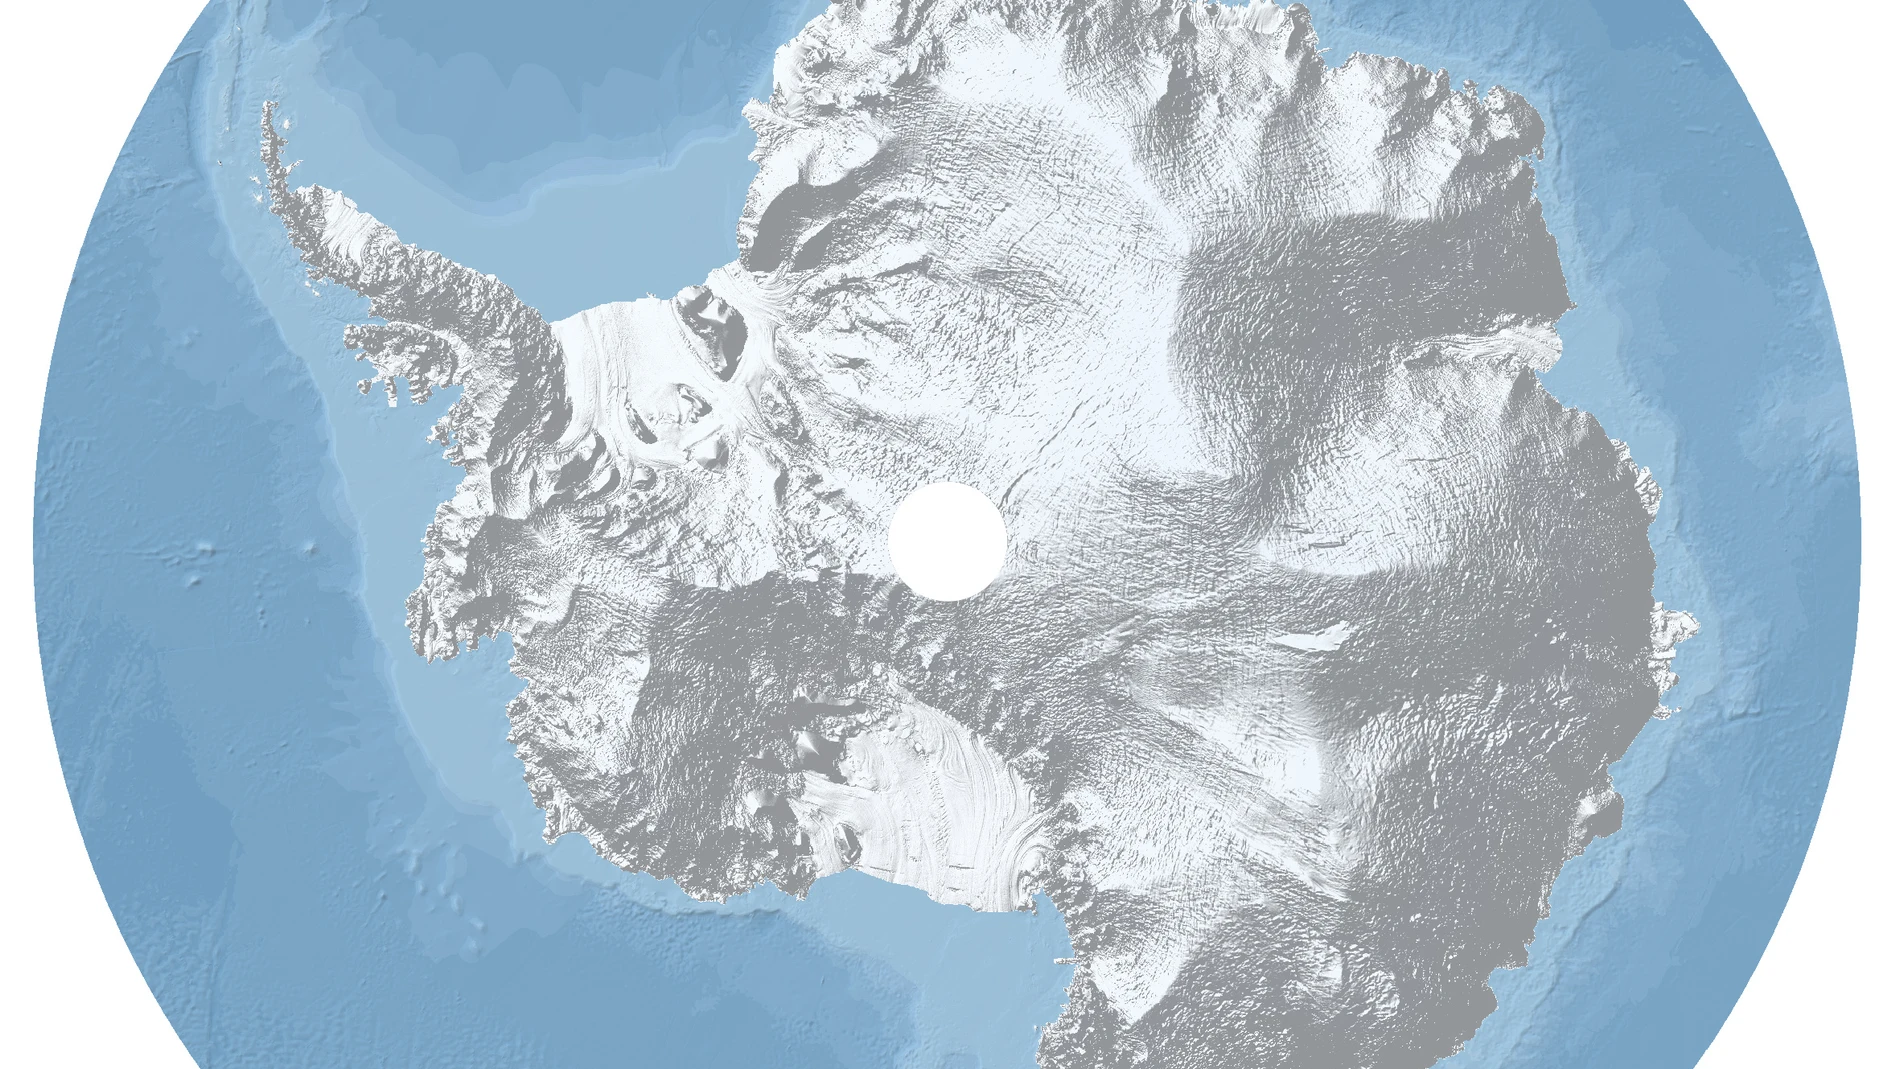 Esta imagen de la Antártida, reconstruida a partir de datos obtenidos por el satélite CryoSat, muestra el relieve de la capa de hielo que cubre el continente. La Antártida Occidental, a la izquierda, es más escarpada e incluye la Península Antártica, el punto más septentrional del continente. Al norte y al sur las plataformas de Filchner-Ronne y Ross (marcadas en un blanco más brillante) ocupan grandes extensiones en el océano. La Antártida Oriental, a la derecha en esta imagen, presenta una elevación mayor y alberga la mayor parte del hielo del continente. El Polo Sur aparece marcado con un gran punto blanco.